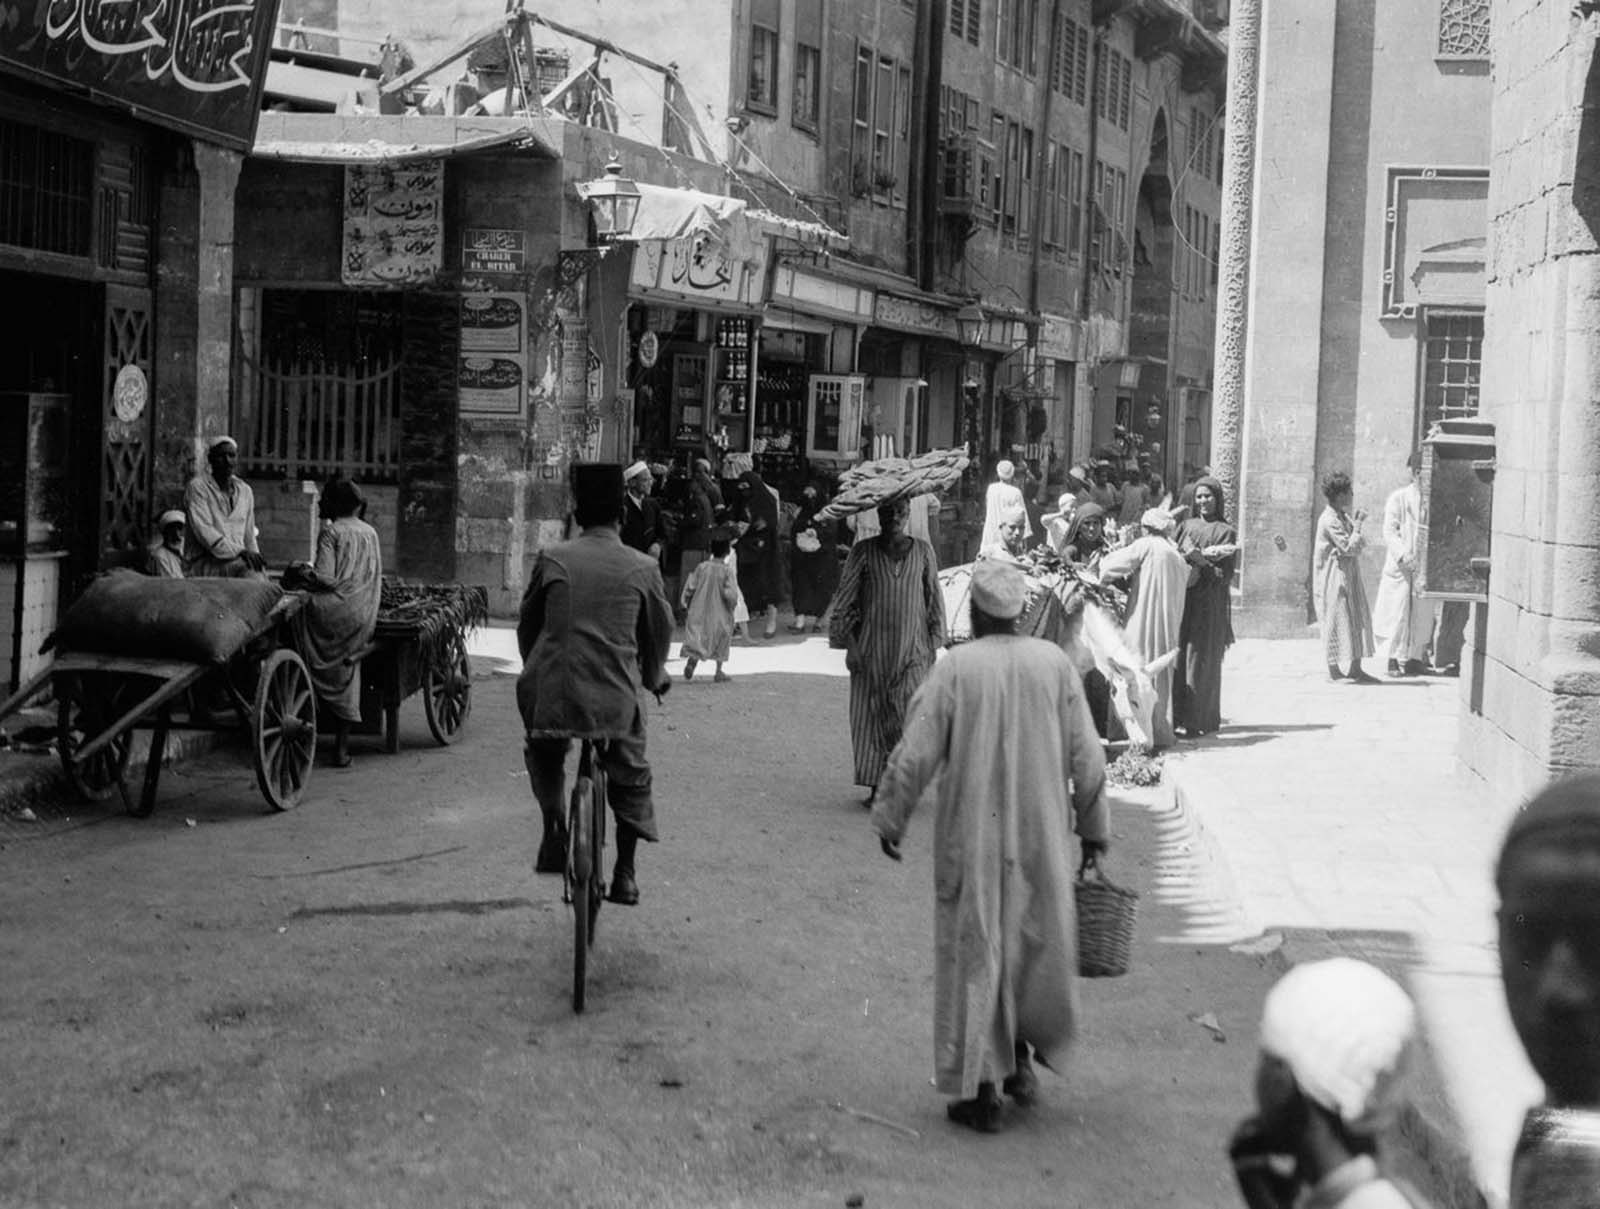 Les rues animées du Vieux Caire, 1900-1935